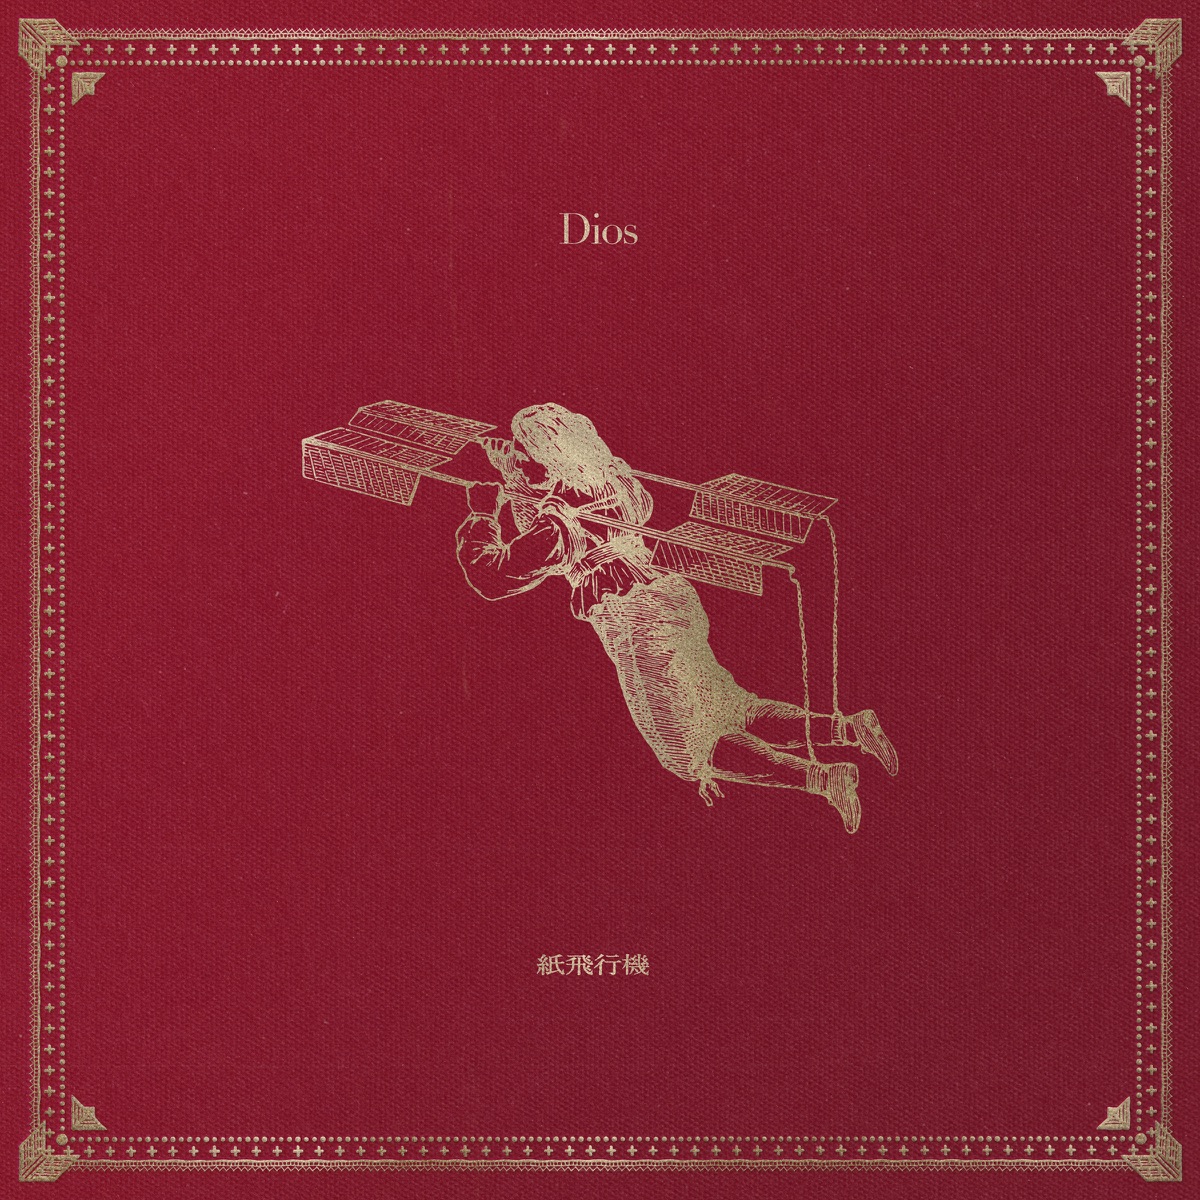 『Dios - 紙飛行機 歌詞』収録の『紙飛行機』ジャケット